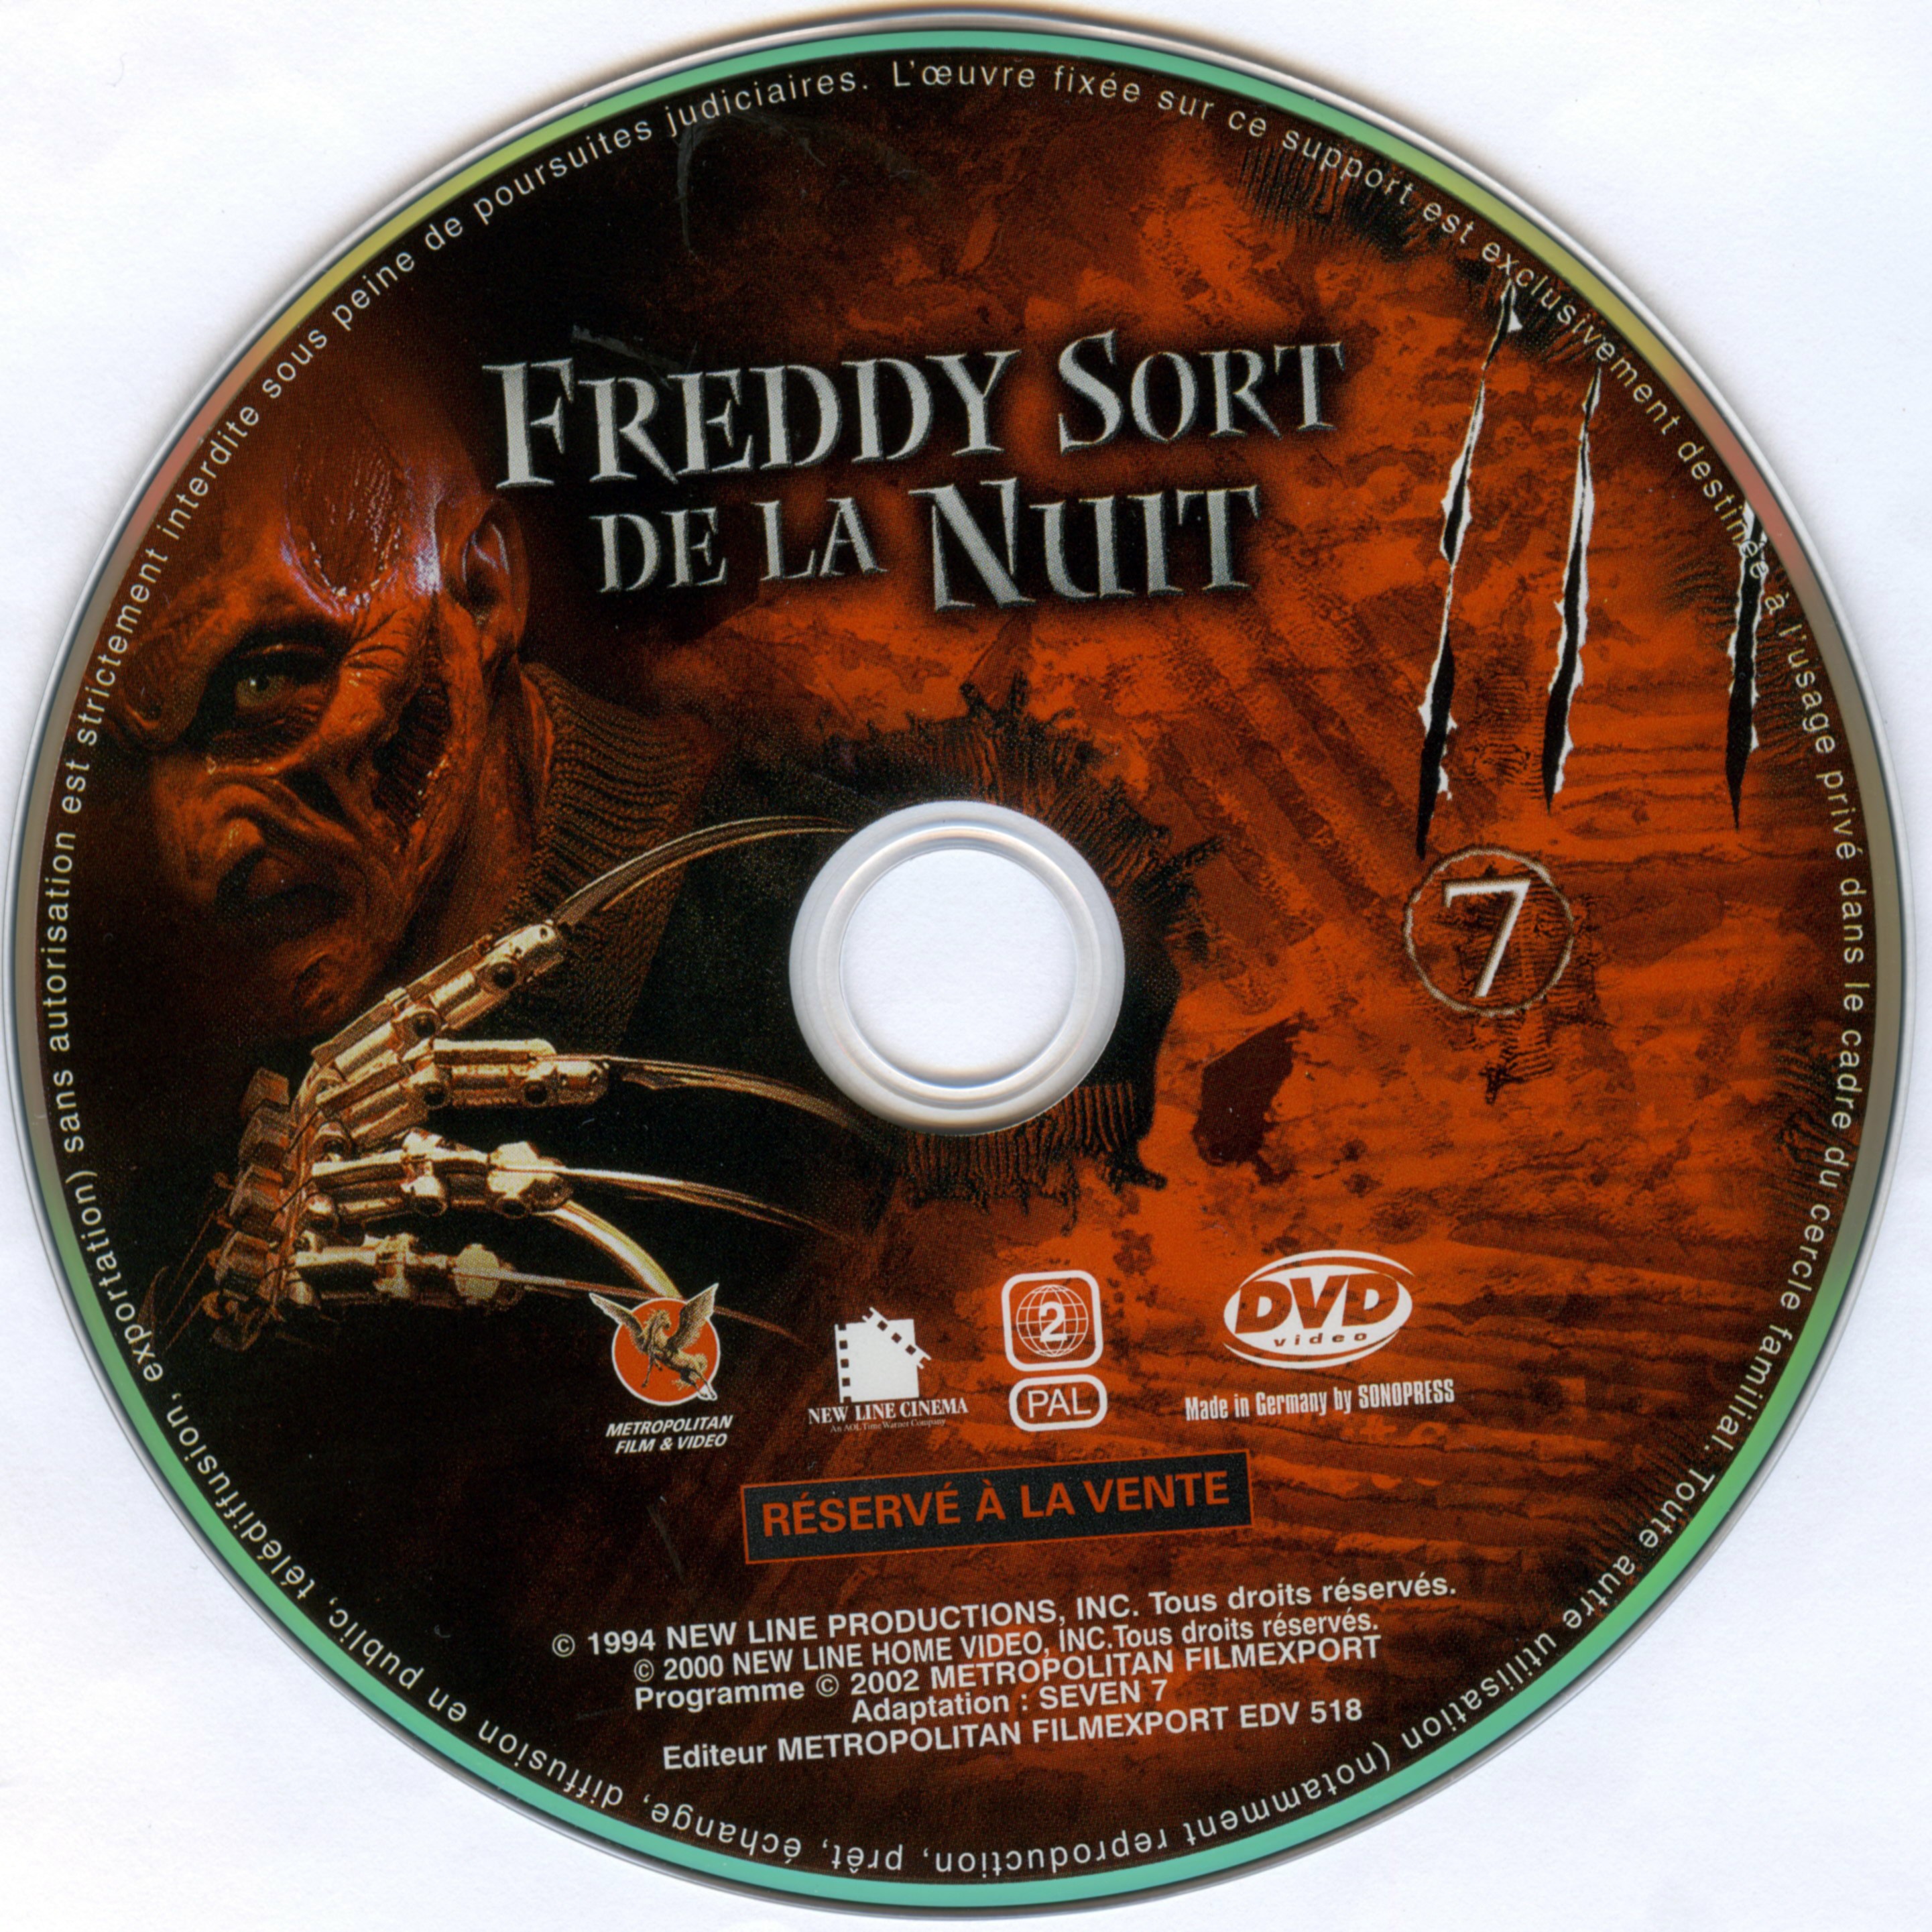 Freddy 7 sort de la nuit